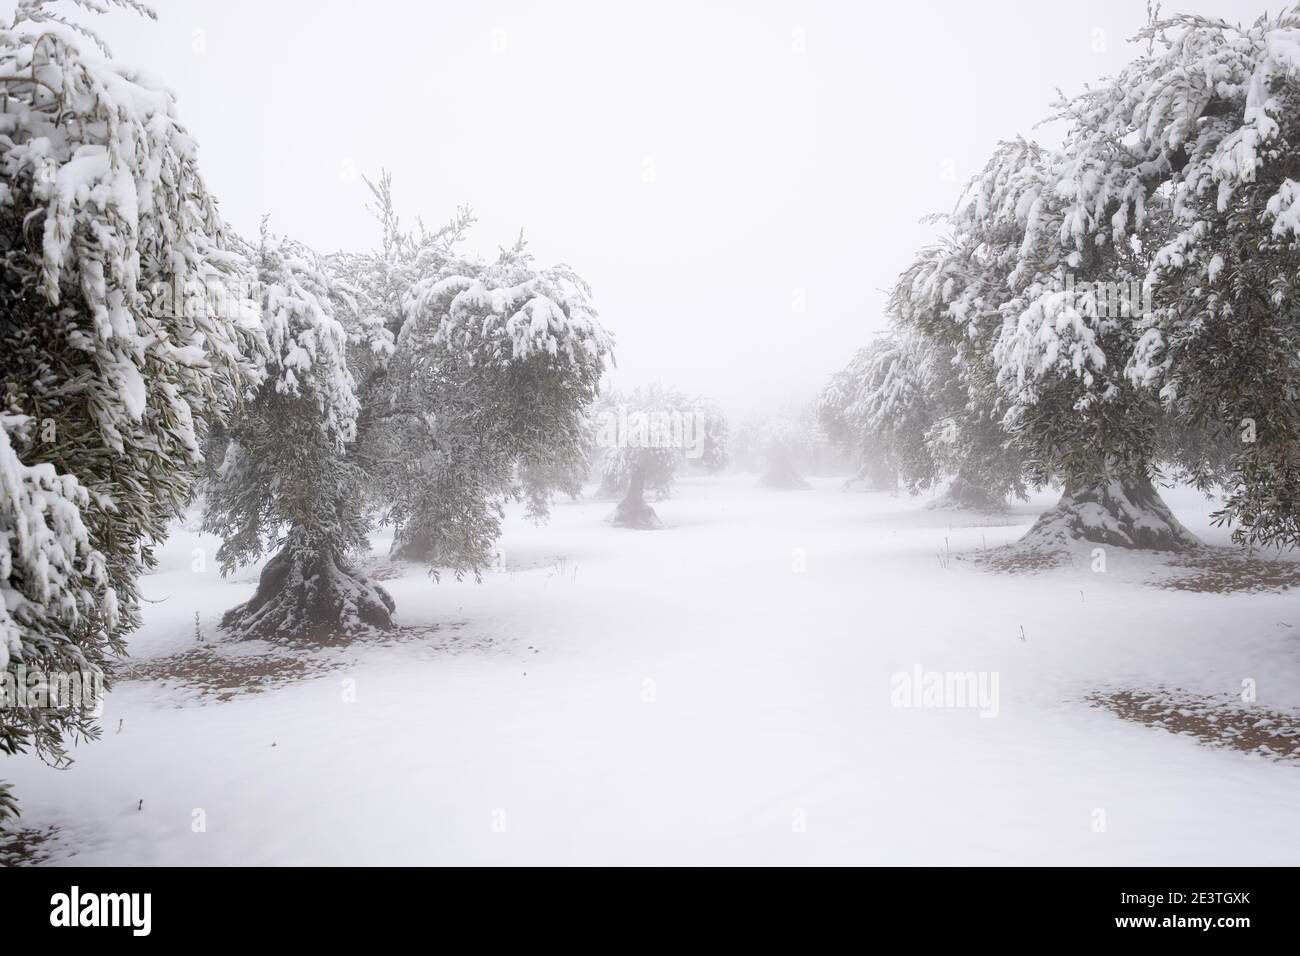 un'immagine insolita di un oliveto pieno di grandi ulivi secolari ricoperti da uno spesso strato di neve, concetto di cambiamento climatico. Spagna, Estremadura Foto Stock